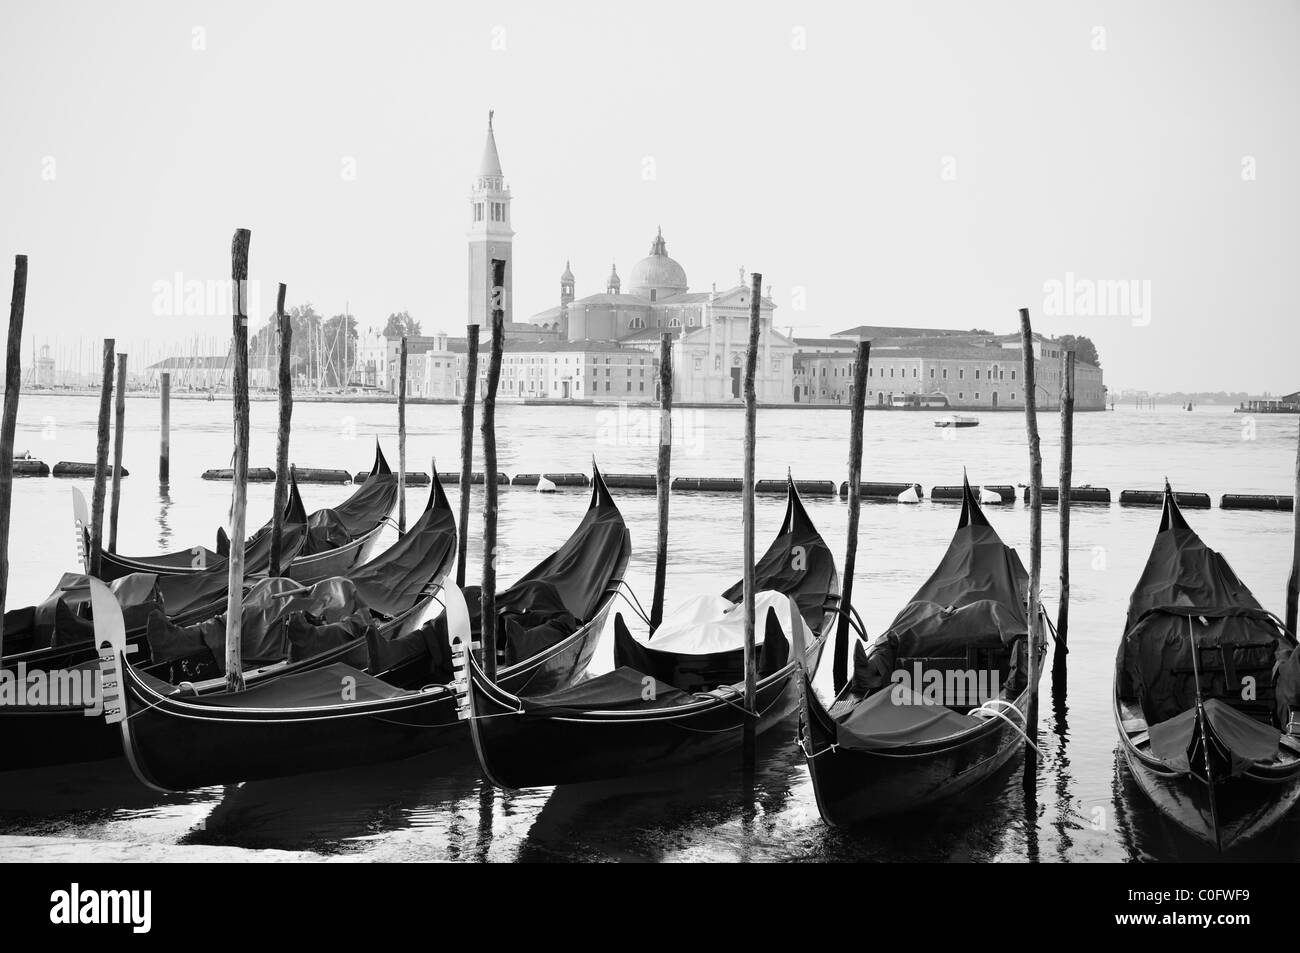 Les gondoles de Venise, Italie - noir et blanc Banque D'Images